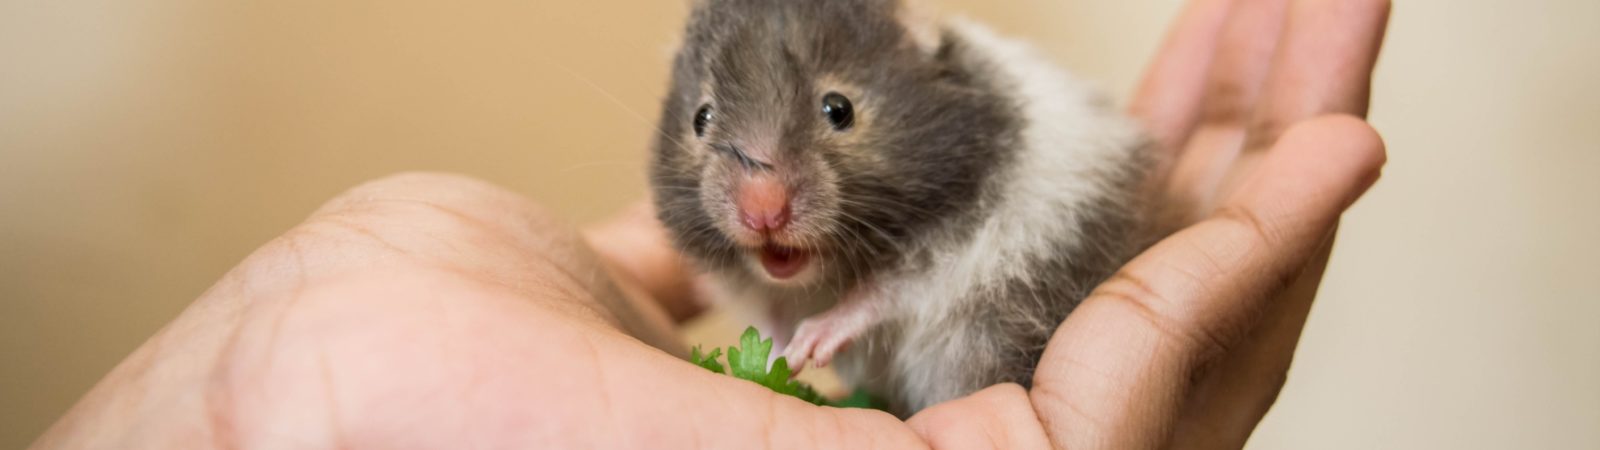 Hamster: 5 cuidados essenciais para manter o pet saudável